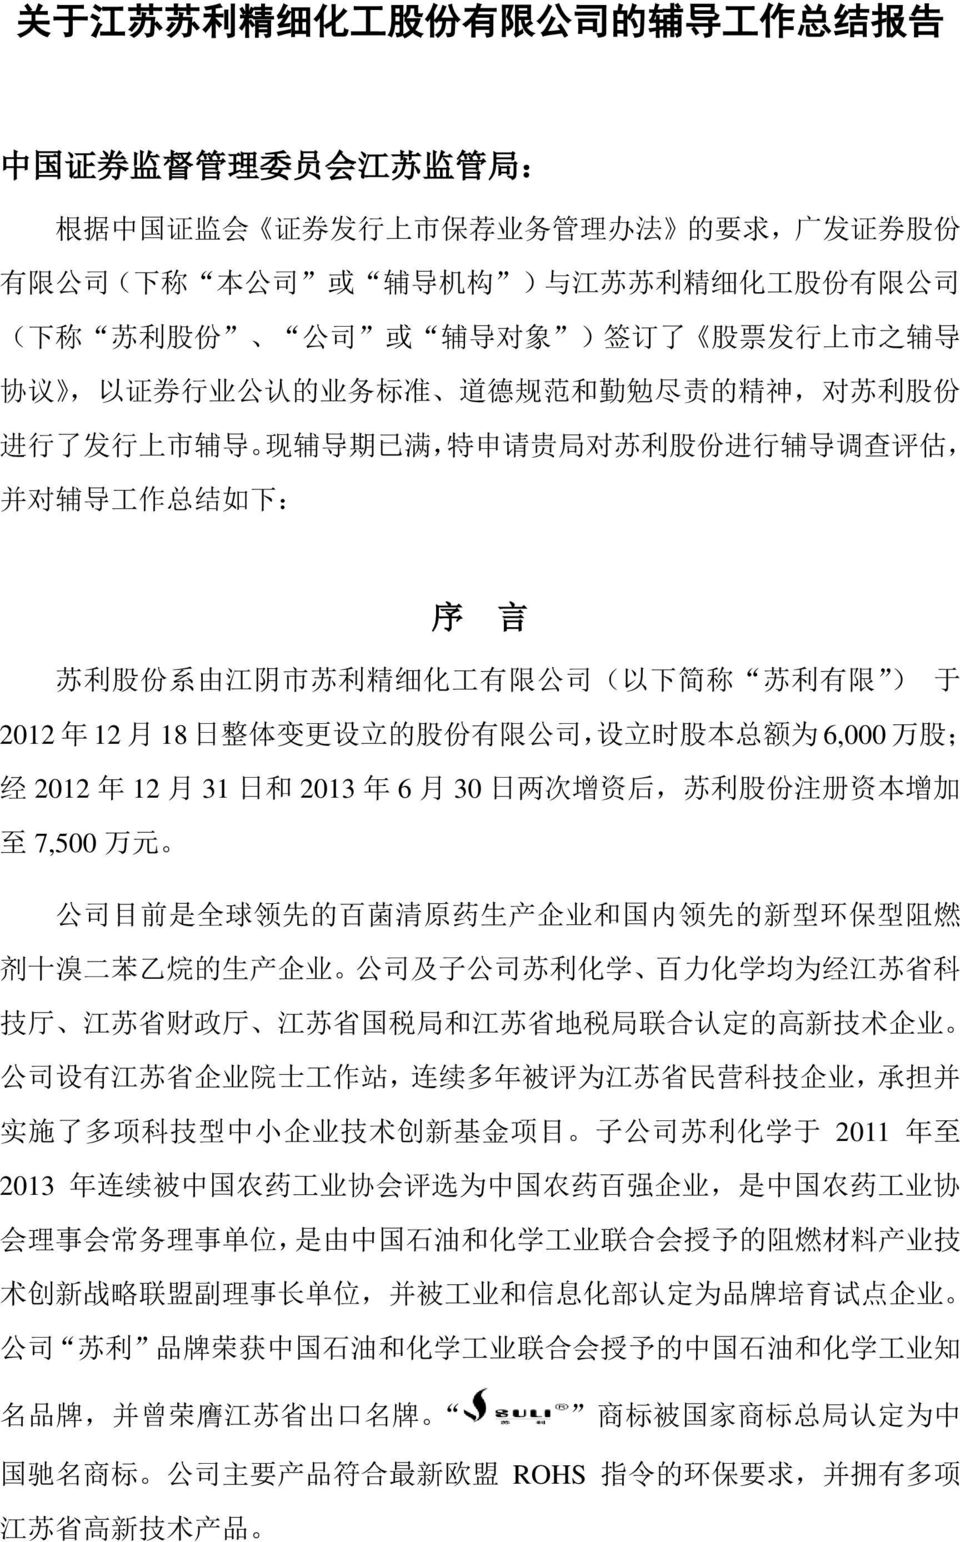 导 工 作 总 结 如 下 : 序 言 苏 利 股 份 系 由 江 阴 市 苏 利 精 细 化 工 有 限 公 司 ( 以 下 简 称 苏 利 有 限 ) 于 2012 年 12 月 18 日 整 体 变 更 设 立 的 股 份 有 限 公 司, 设 立 时 股 本 总 额 为 6,000 万 股 ; 经 2012 年 12 月 31 日 和 2013 年 6 月 30 日 两 次 增 资 后,